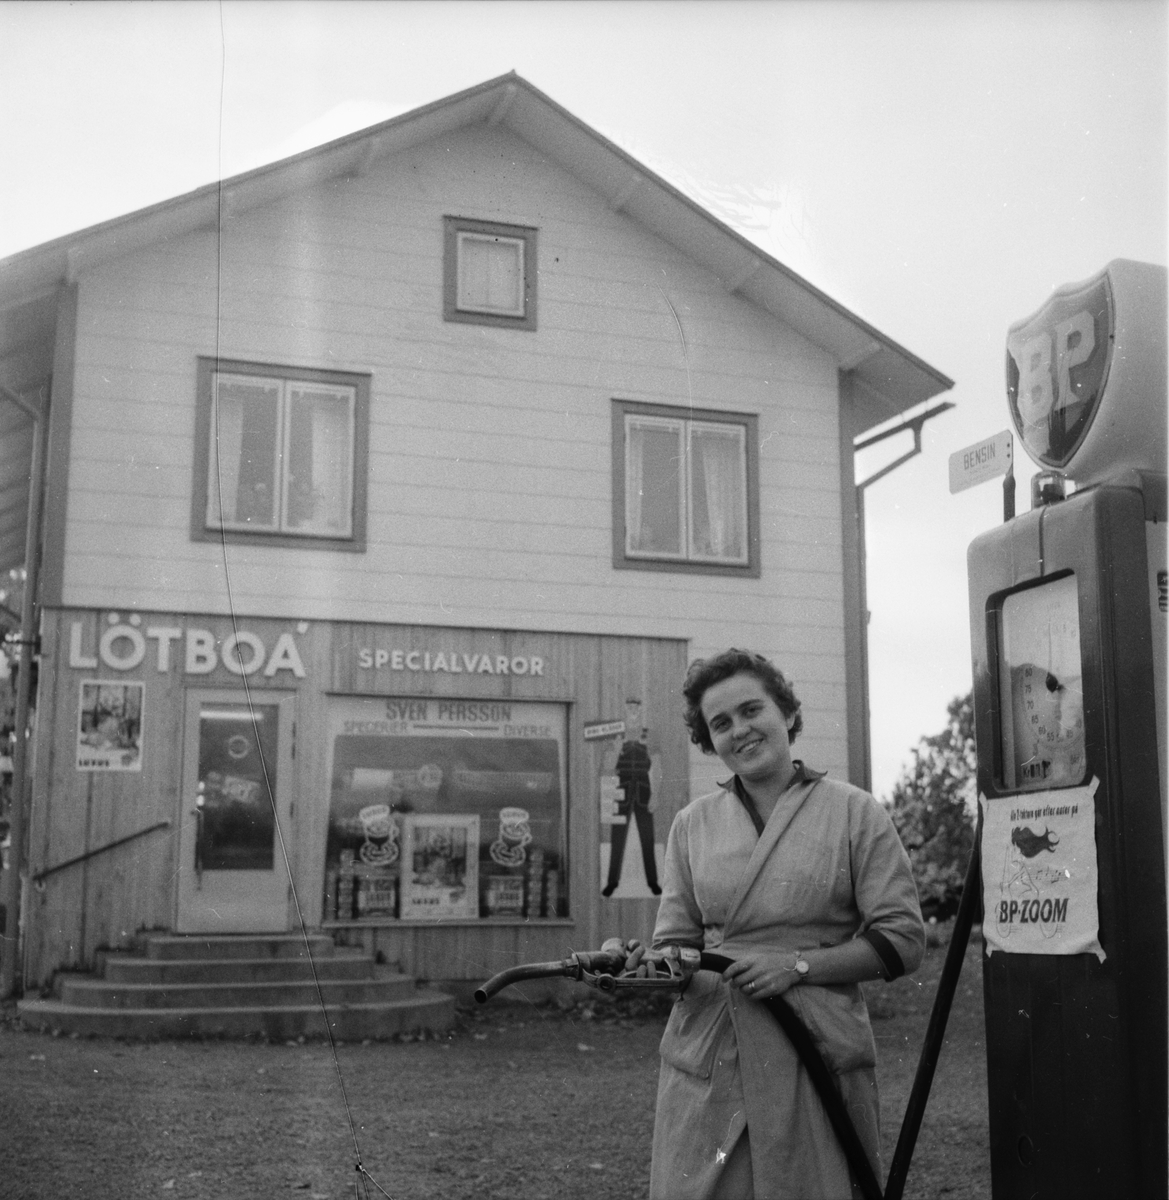 Köpmanna 50-års jubileum. Affäerr i S.Hälsingland.
September 1958.
Köpmannaförbundet 50 år.
Lokala repotage 8/10 1958.